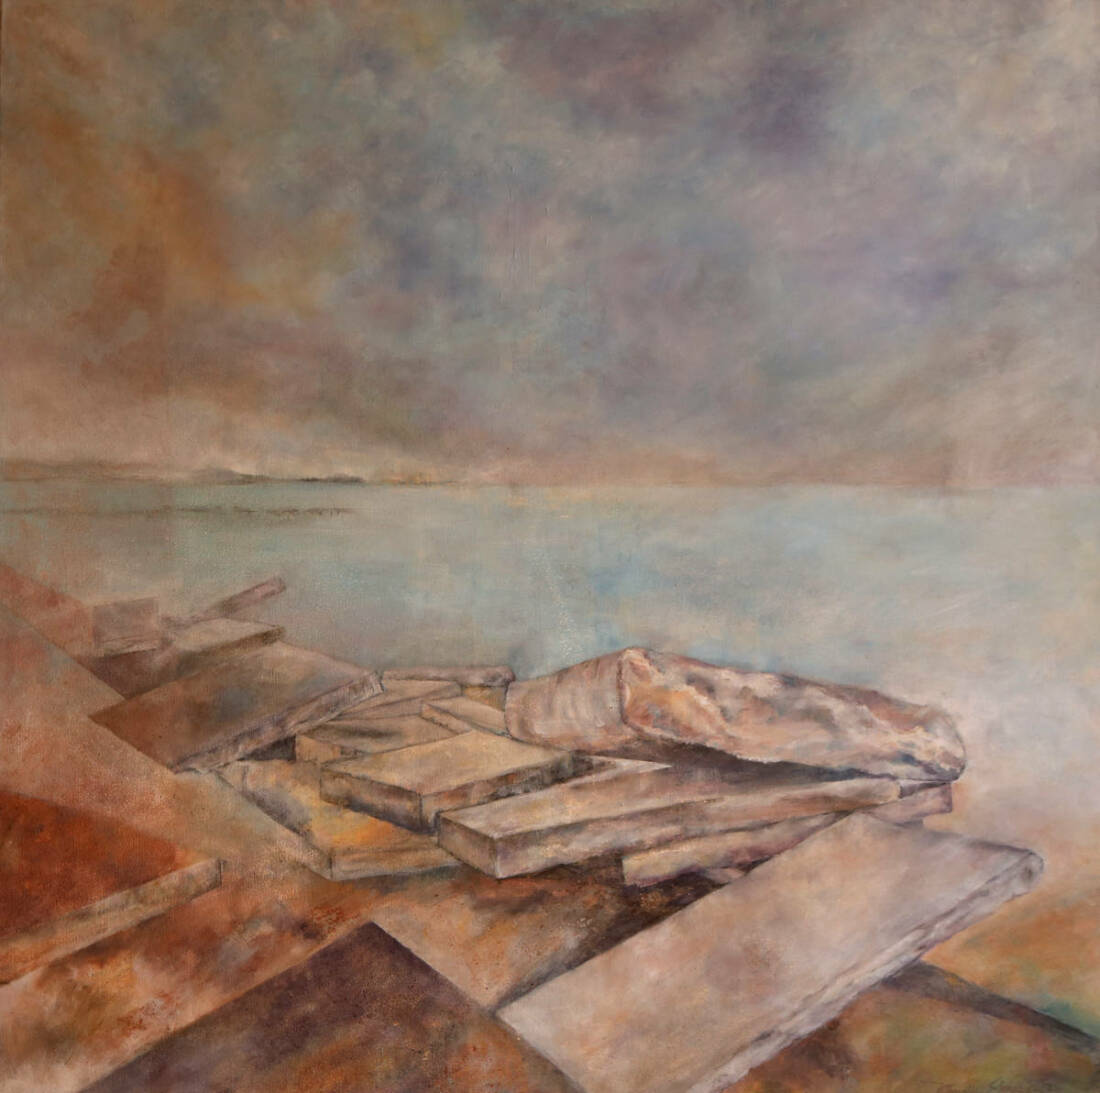 uferlos, 2020, Öl auf Leinwand, 90 × 90 cm